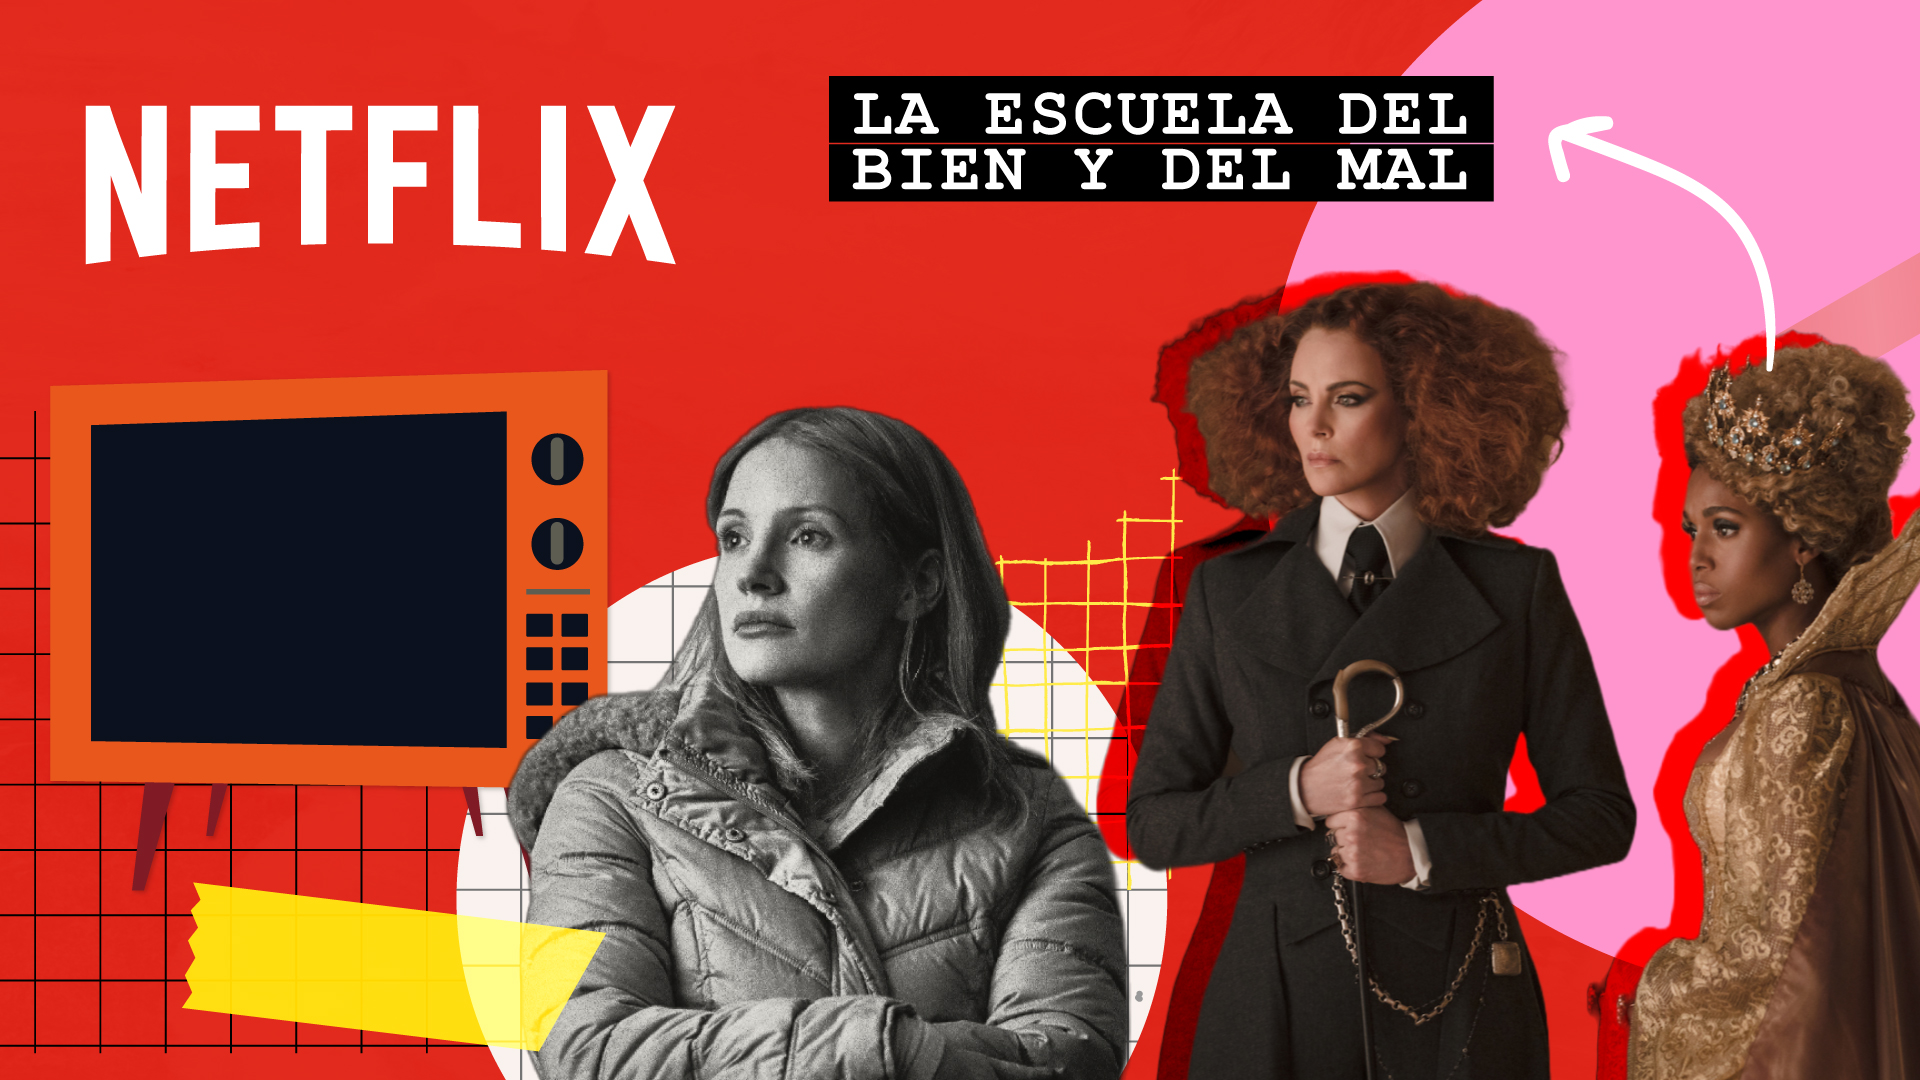 Estrenos de Netflix en octubre: “El ángel de la muerte”, “La escuela del bien y del mal”, “Las hermanas” y más